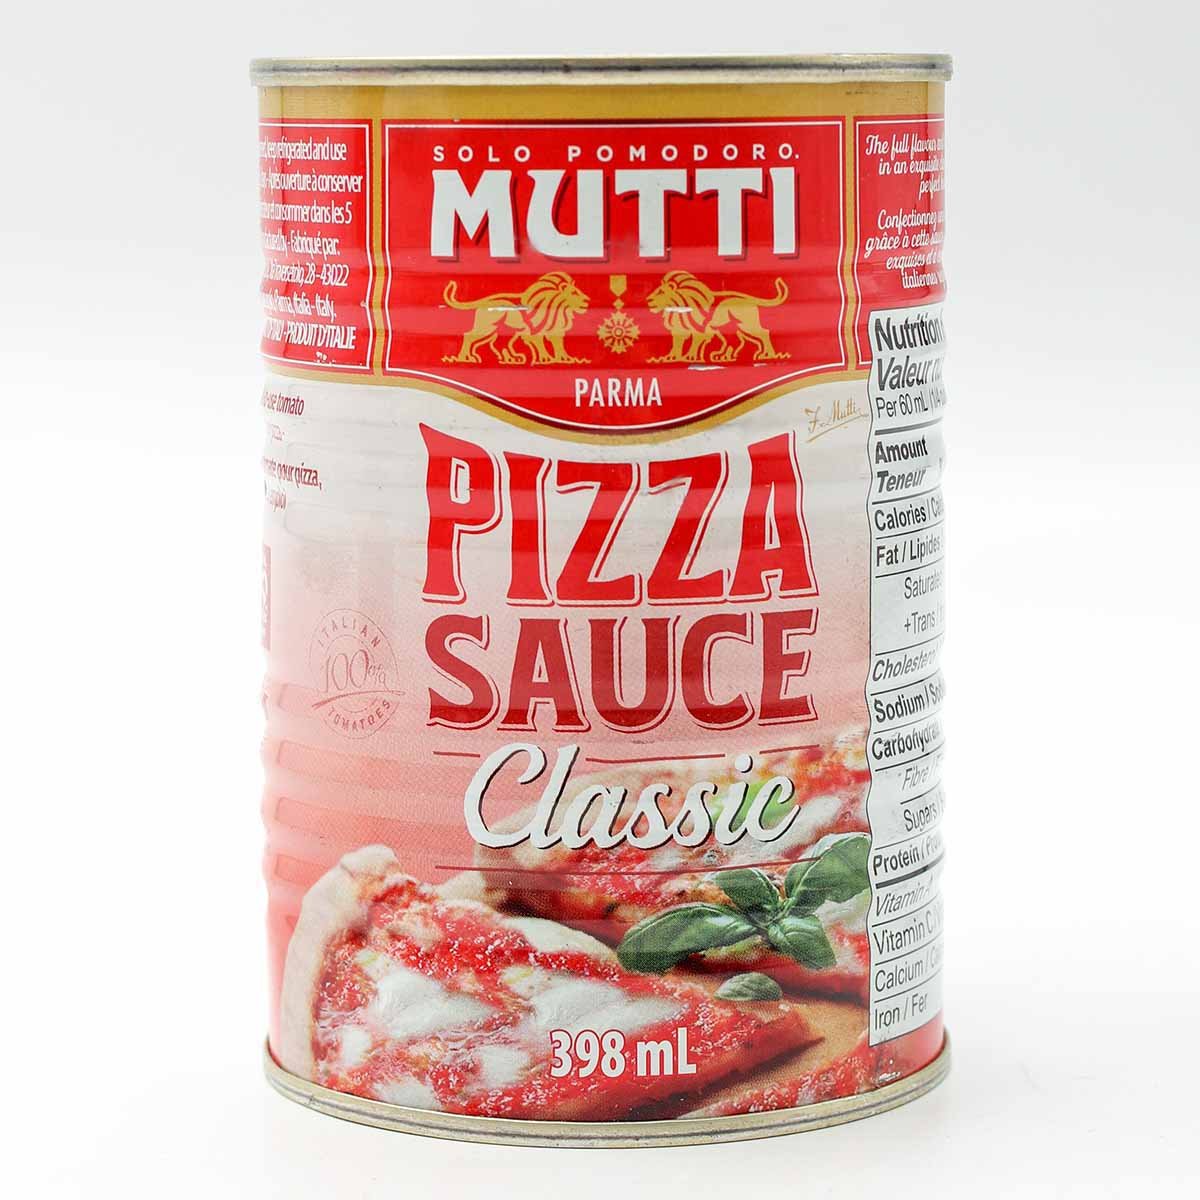 mutti томатный соус для пиццы классический фото 19